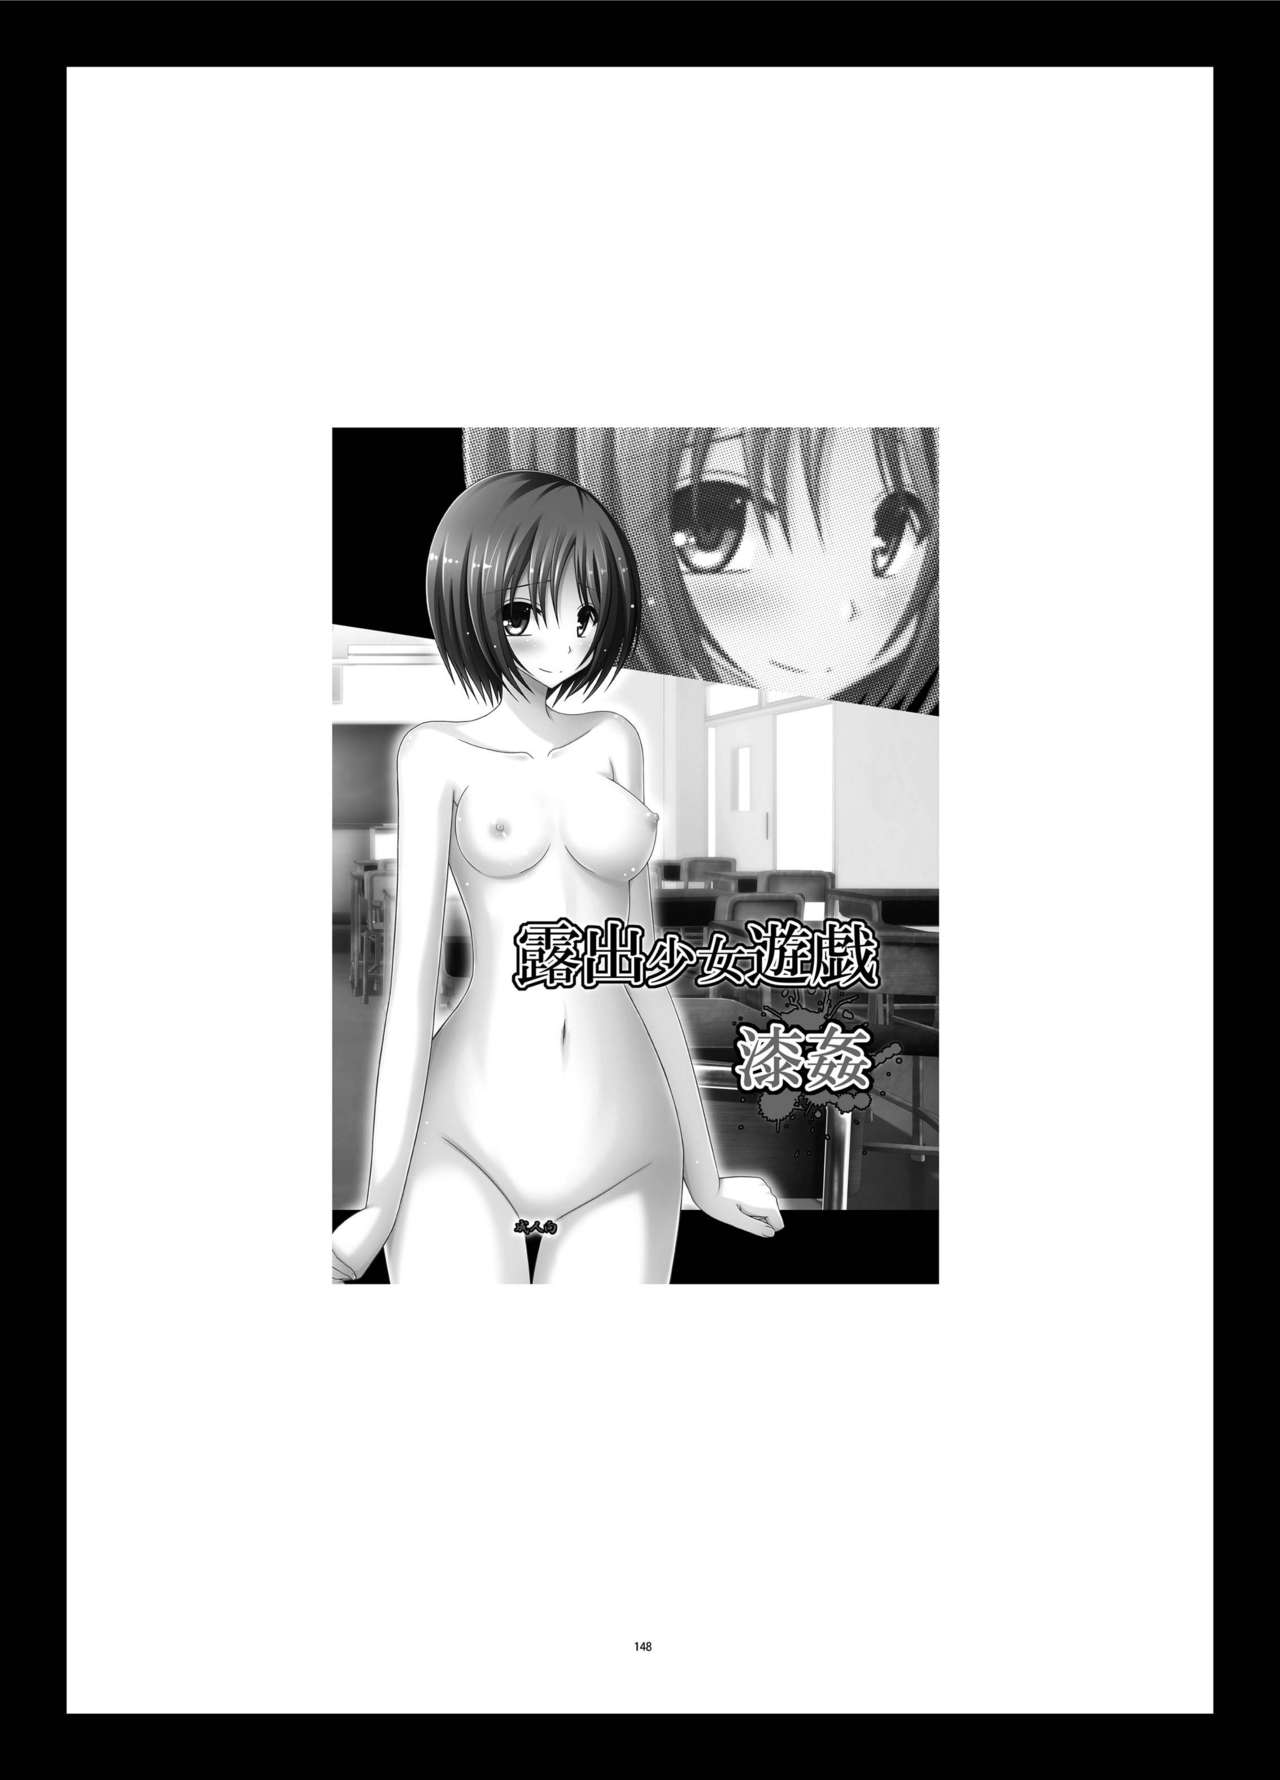 [valssu (Charu)] Roshutsu Shoujo Yuugi Kan Soushuuhen Hikaru Complete Digital+Printed [English] [Munyu] 